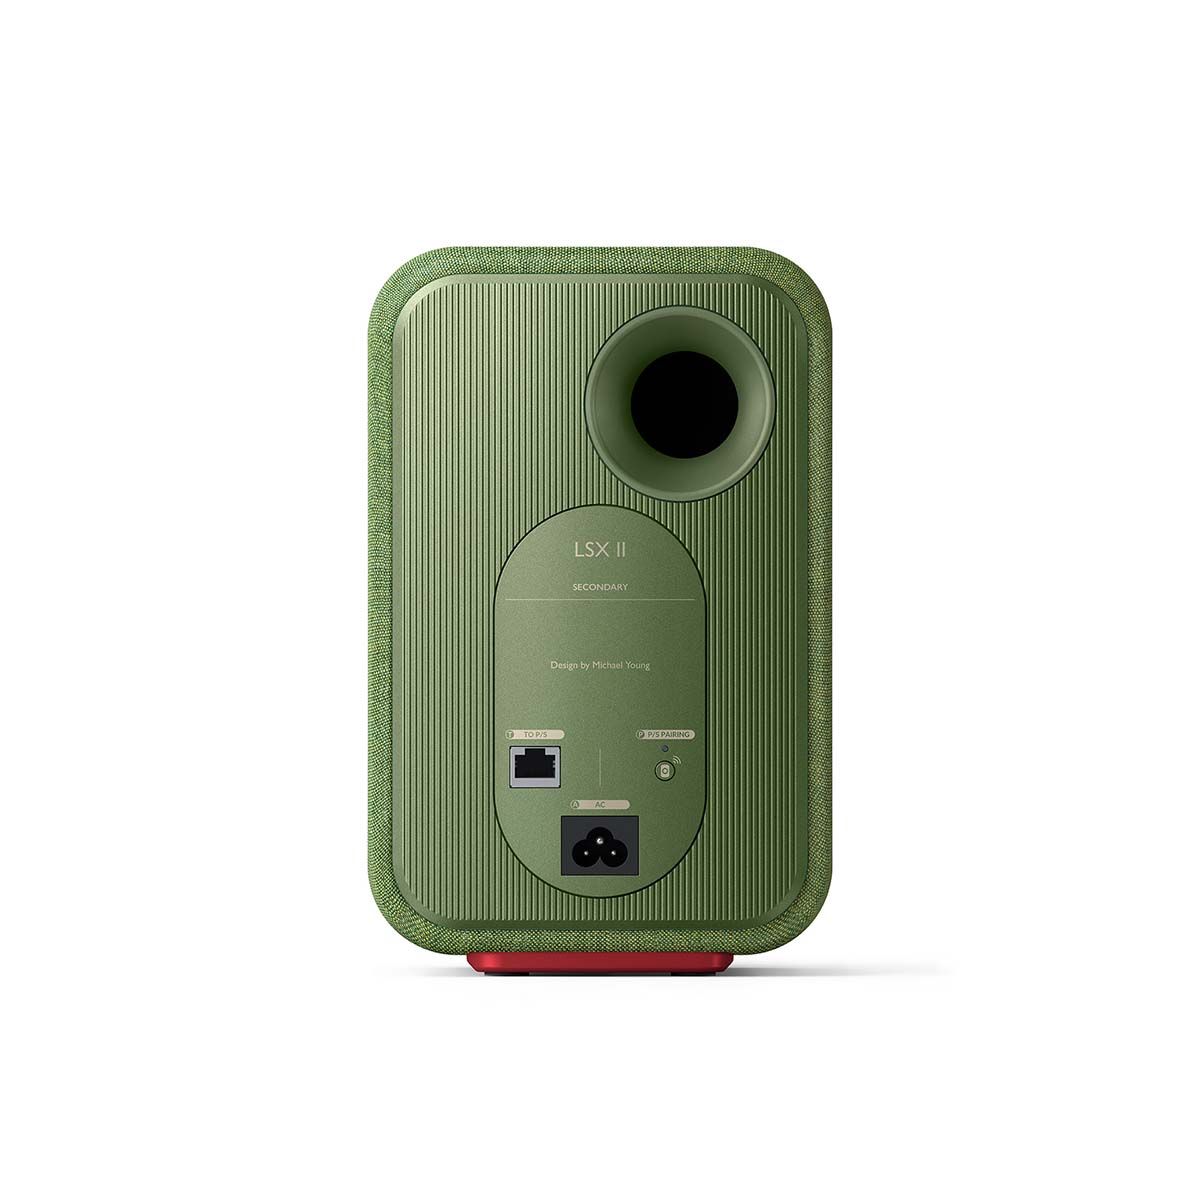 KEF LSX II Wireless HiFi Speakers - Olive Green - rear view of secondary speaker